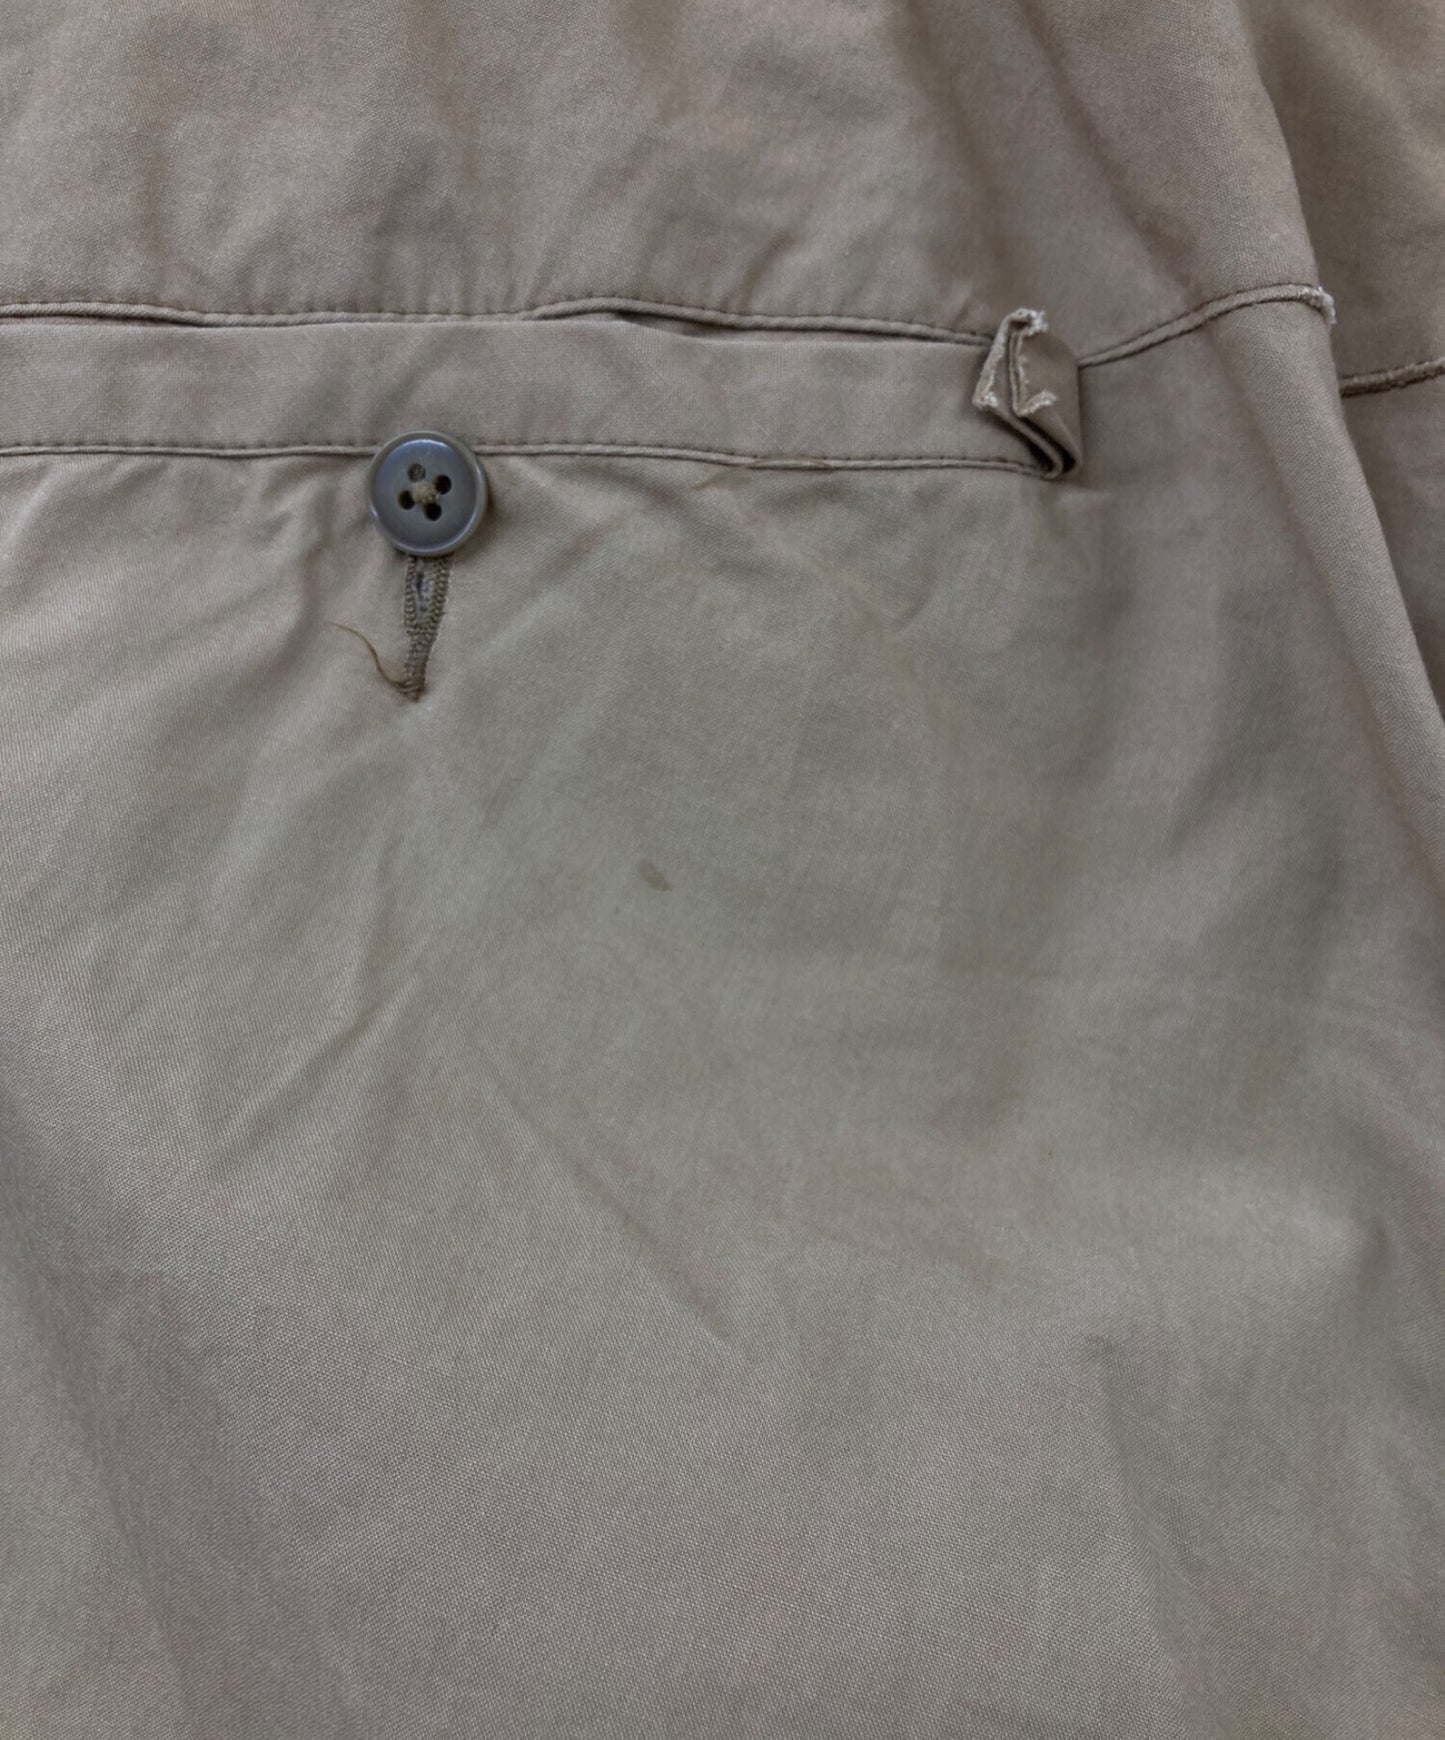 Yohji Yamamoto Pour homme belted กางเกงใน/กางเกงออกแบบ HB-P50-031